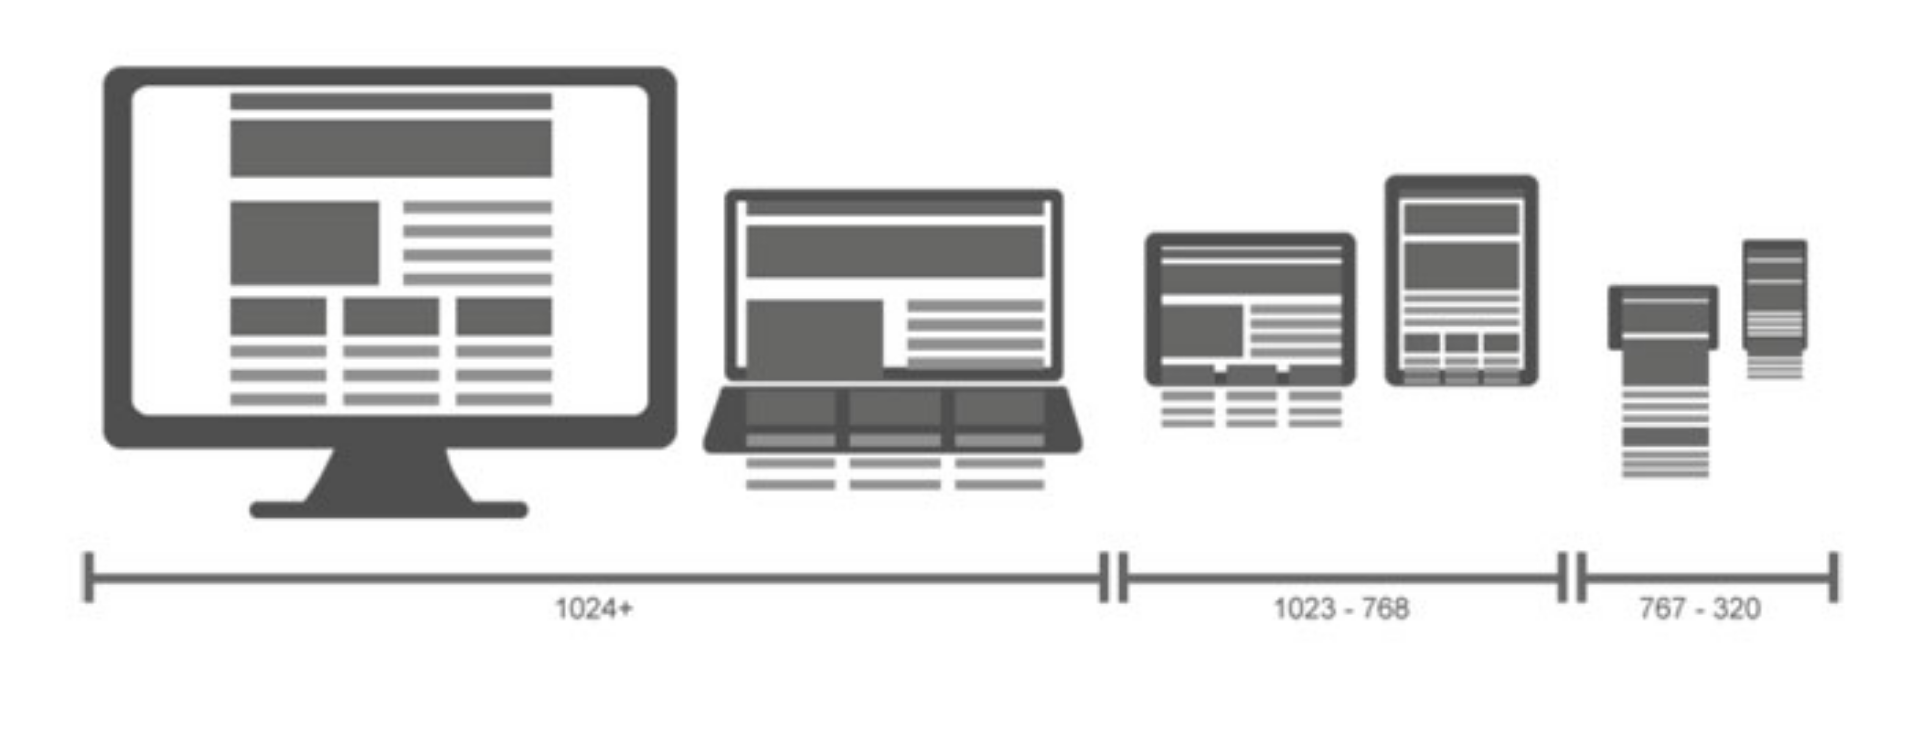 Что такое пиксель в веб-дизайне? - фото 3